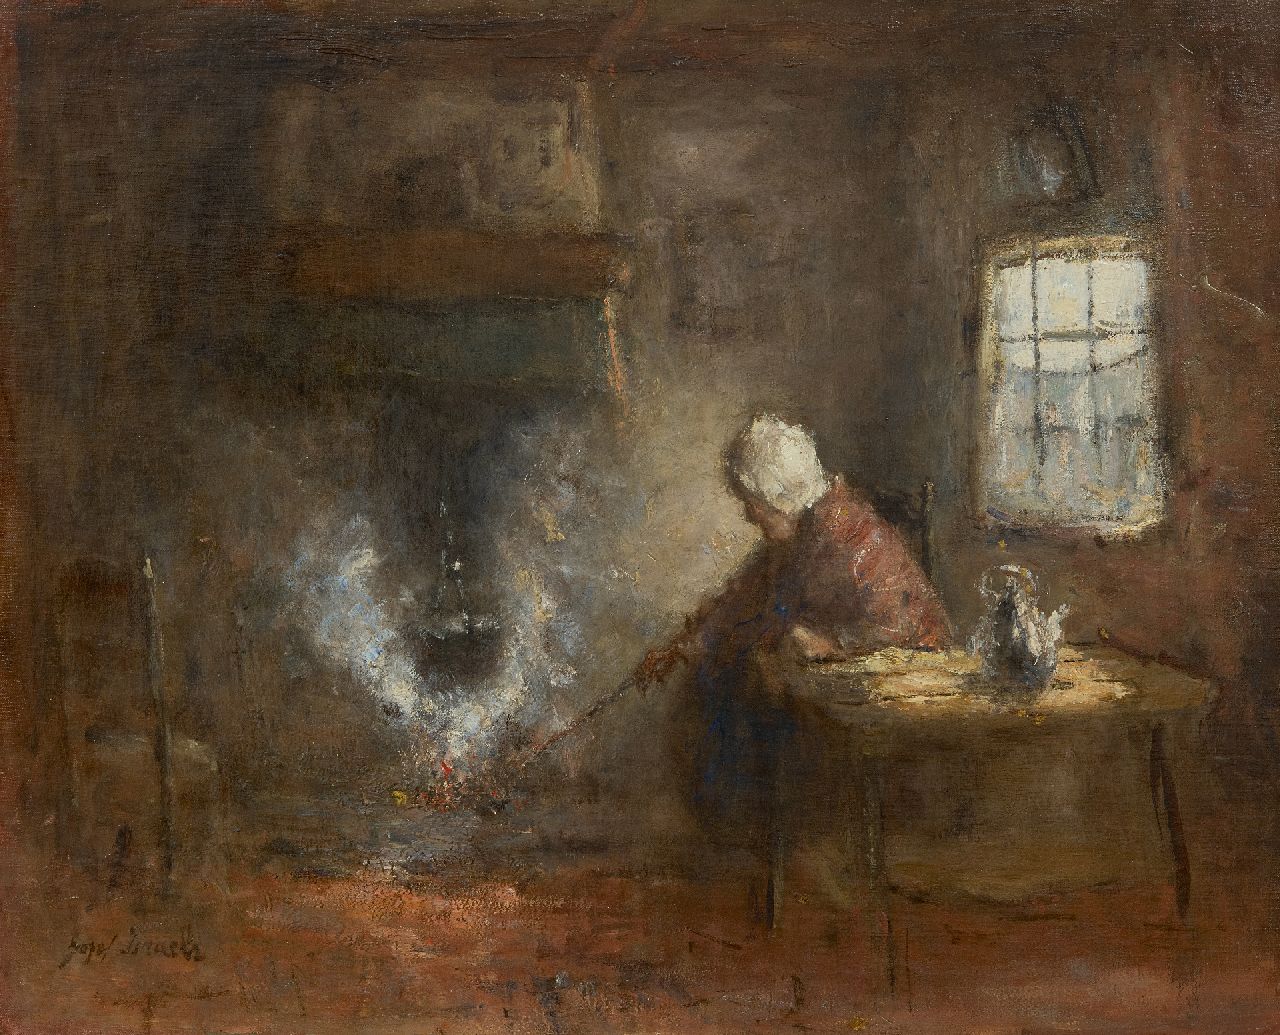 Israëls J.  | Jozef Israëls, At the cooking pot, oil on canvas 43.4 x 53.3 cm, signed l.l.